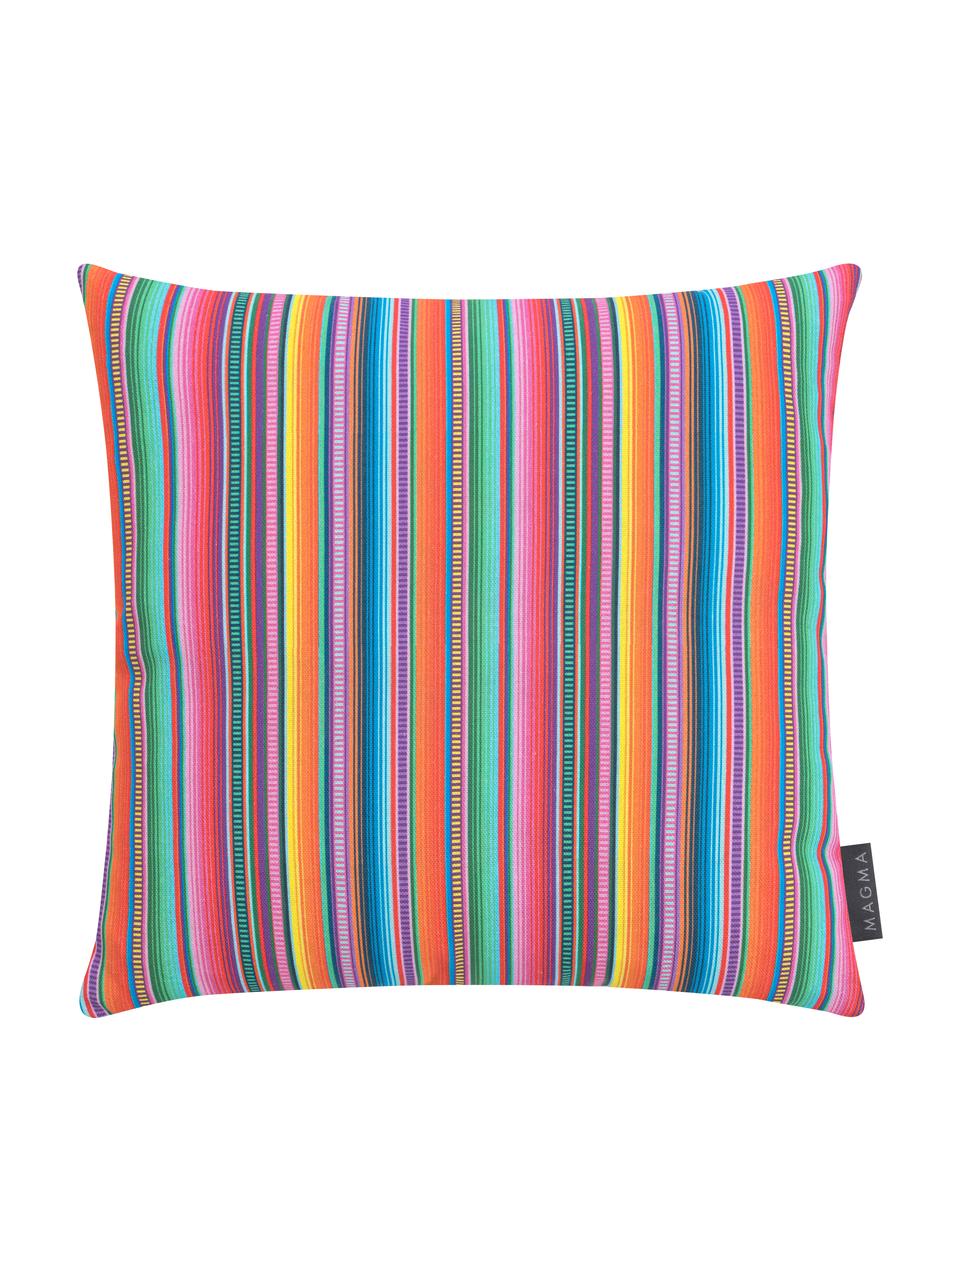 Federa arredo a strisce multicolori Mariachi, Tessuto: mezzo panama, Multicolore, Larg. 40 x Lung. 40 cm